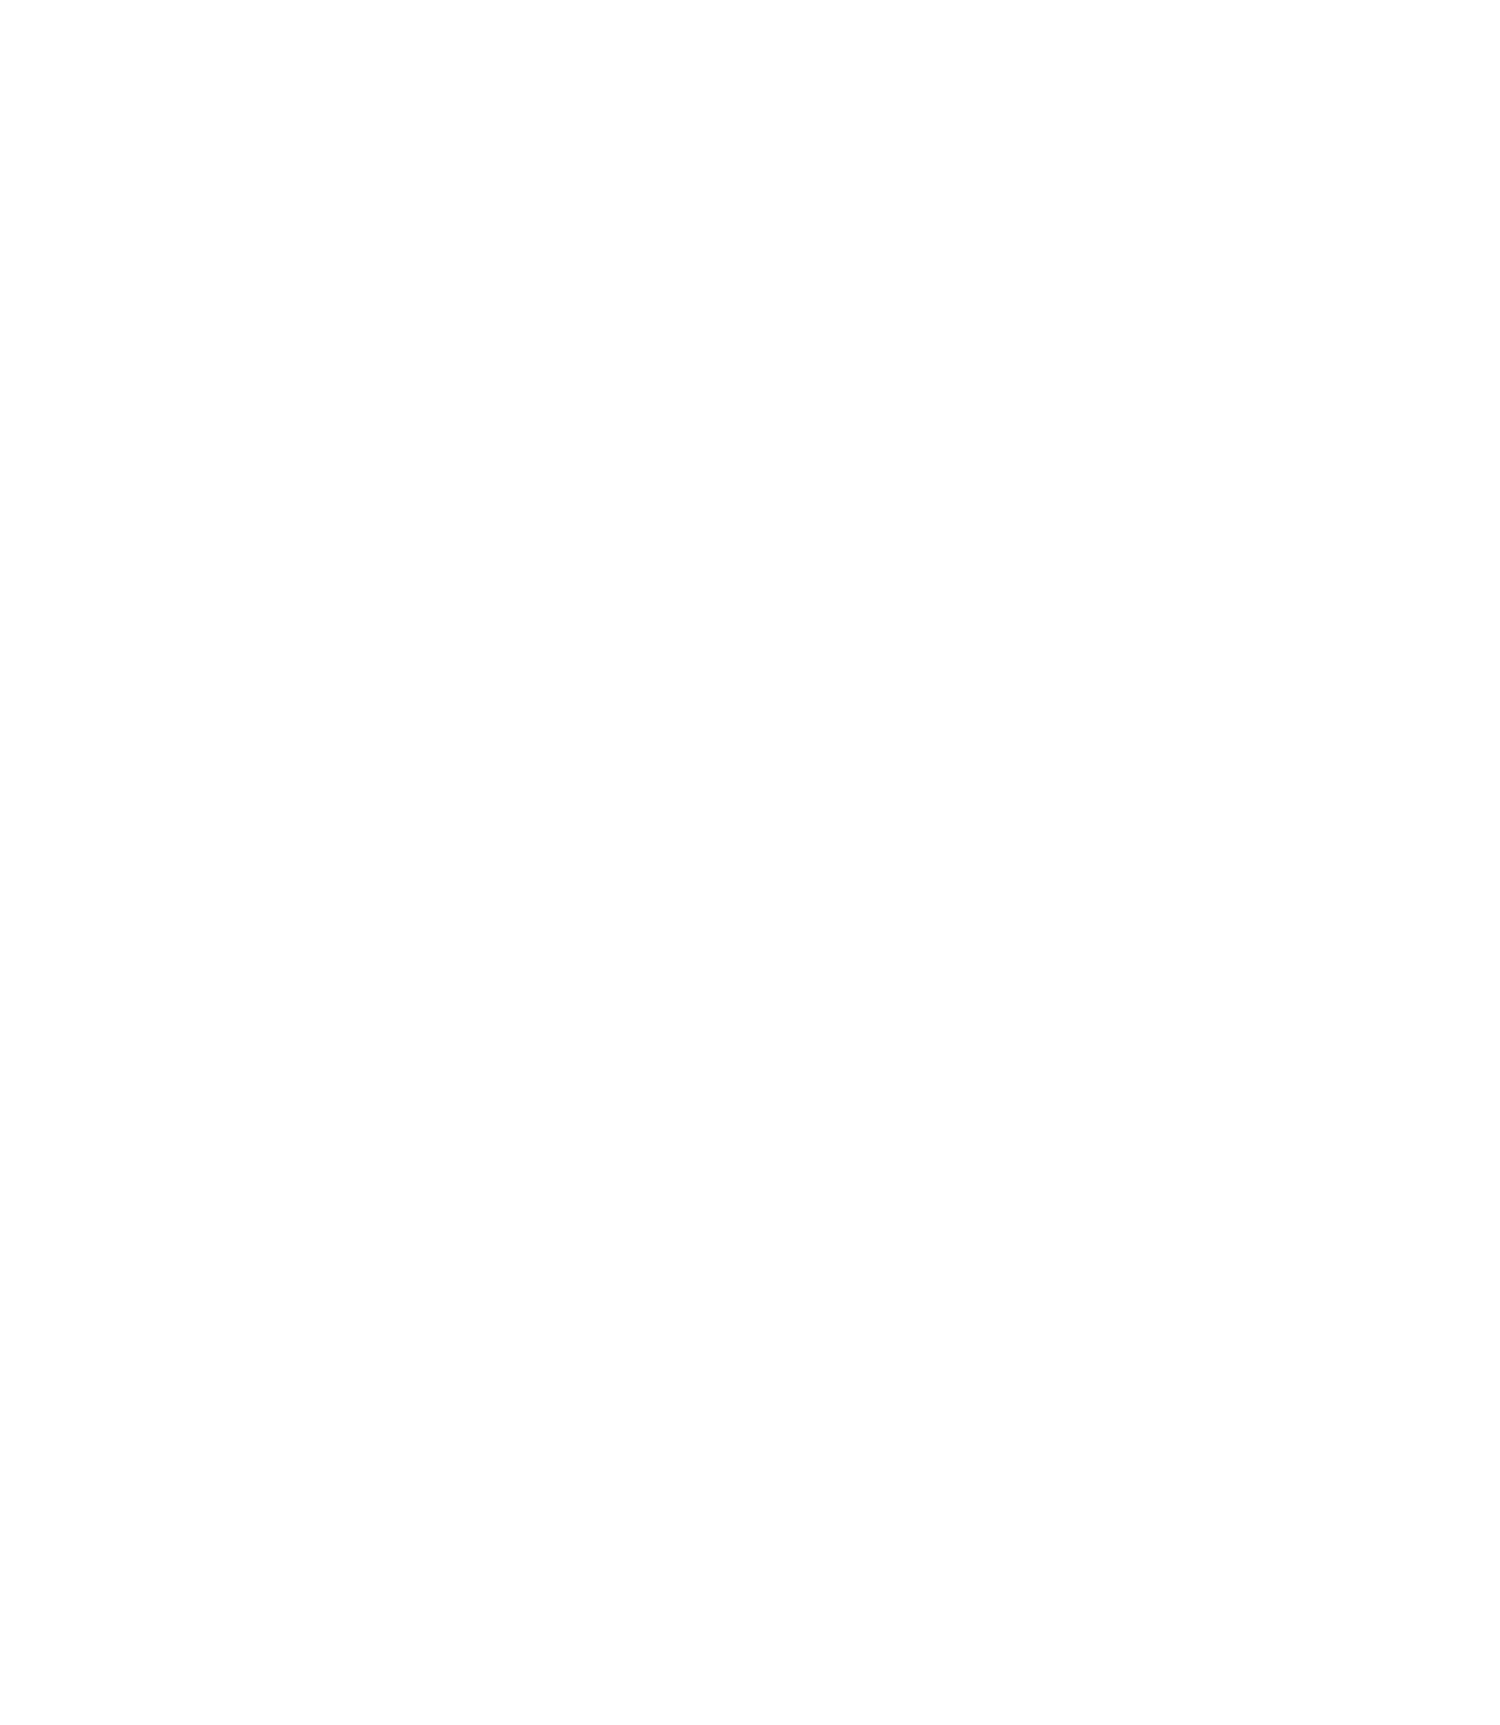 MUSEUM OF LIGHT